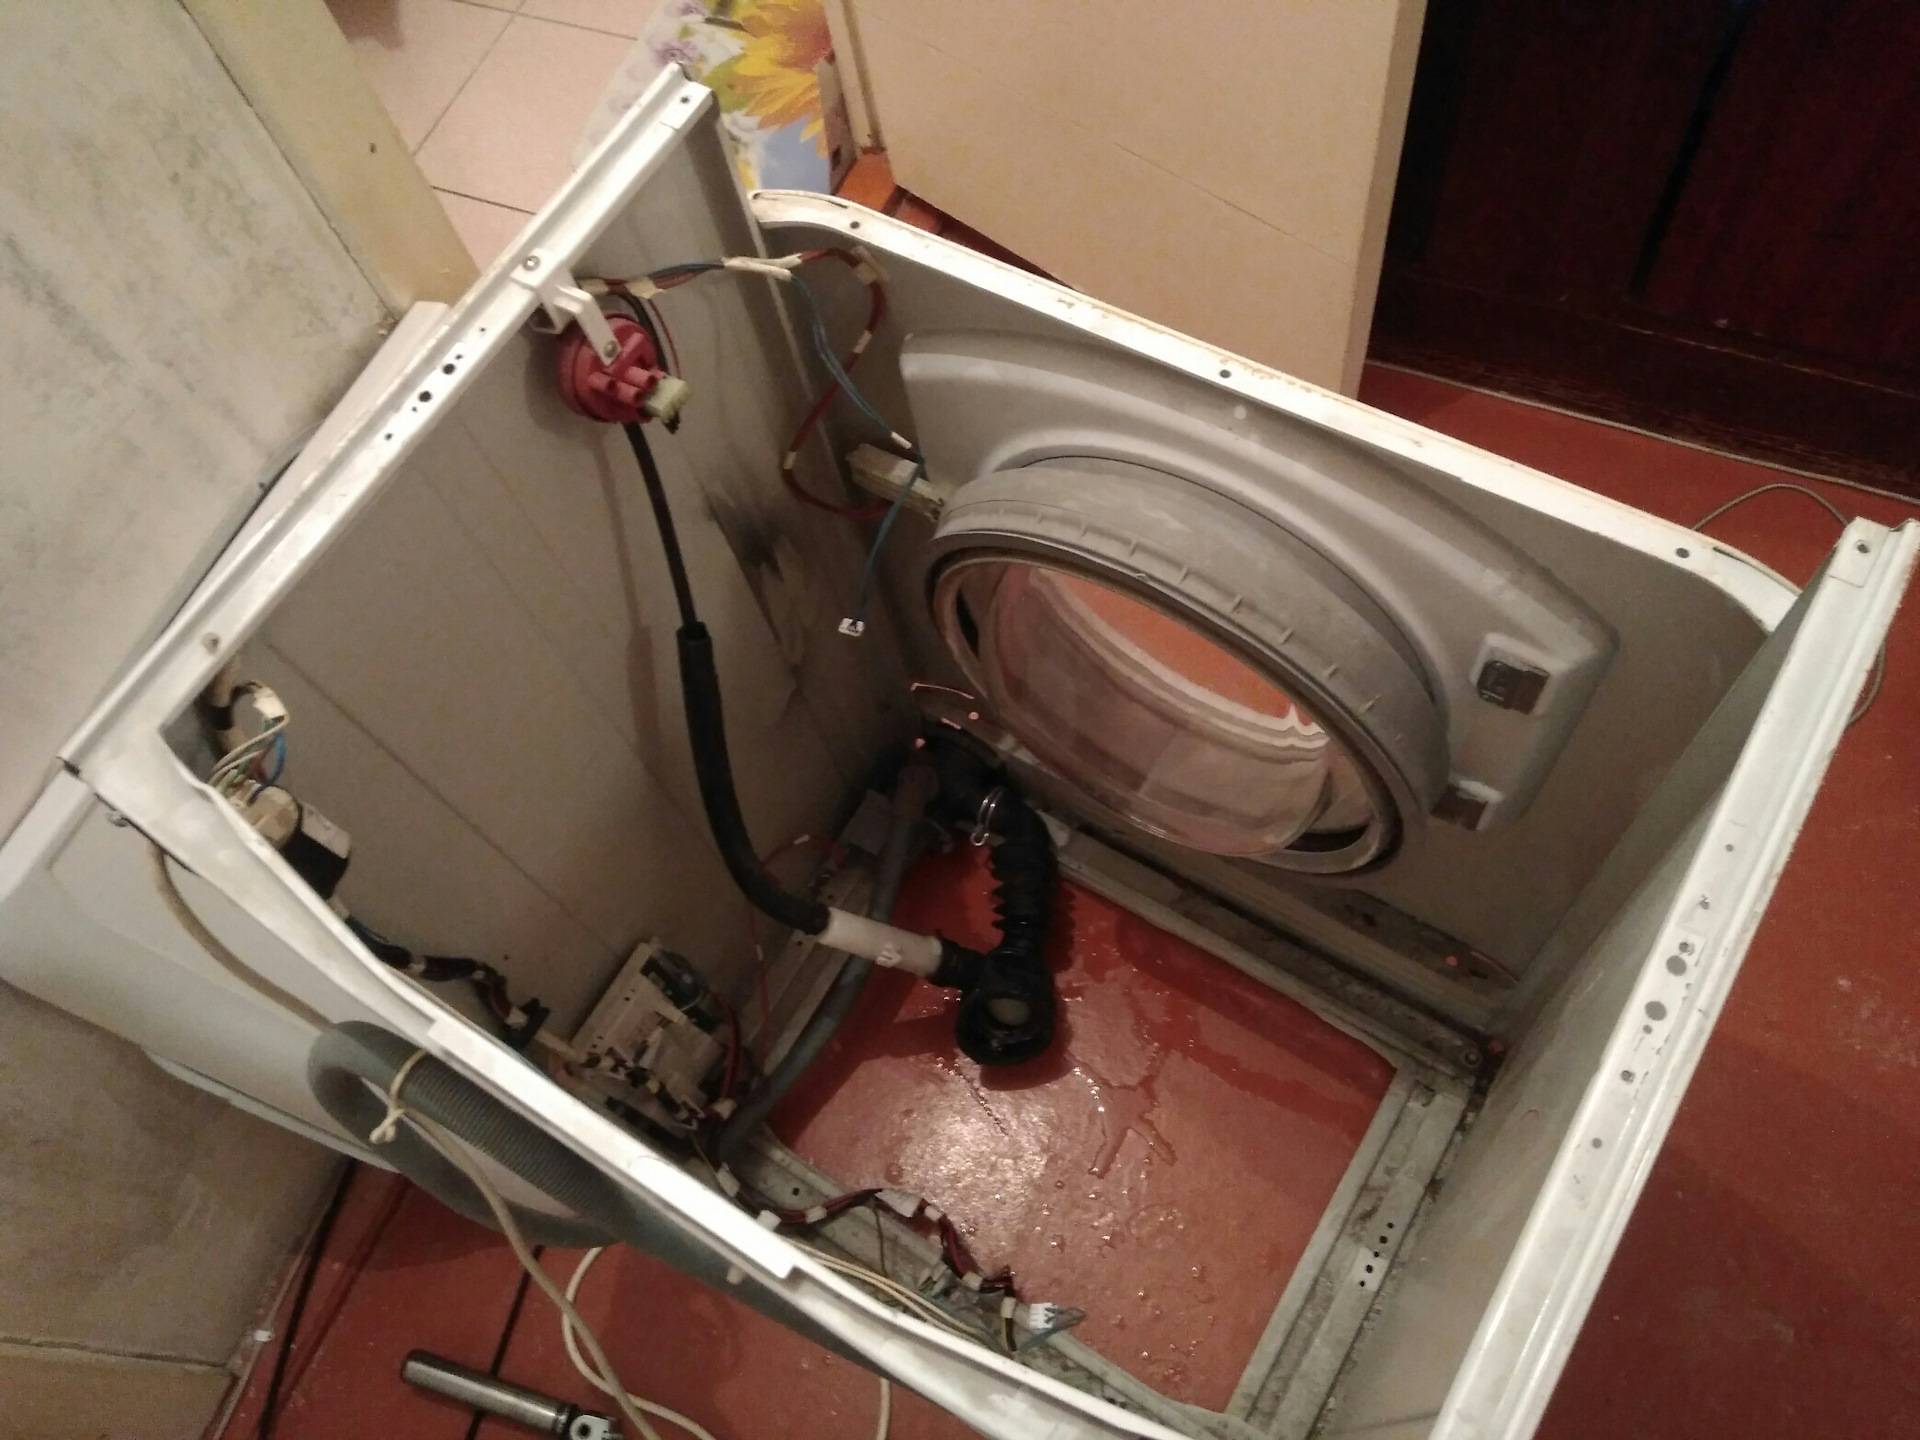 Ремонт стиральной машины lg своими руками: инструкции, видео